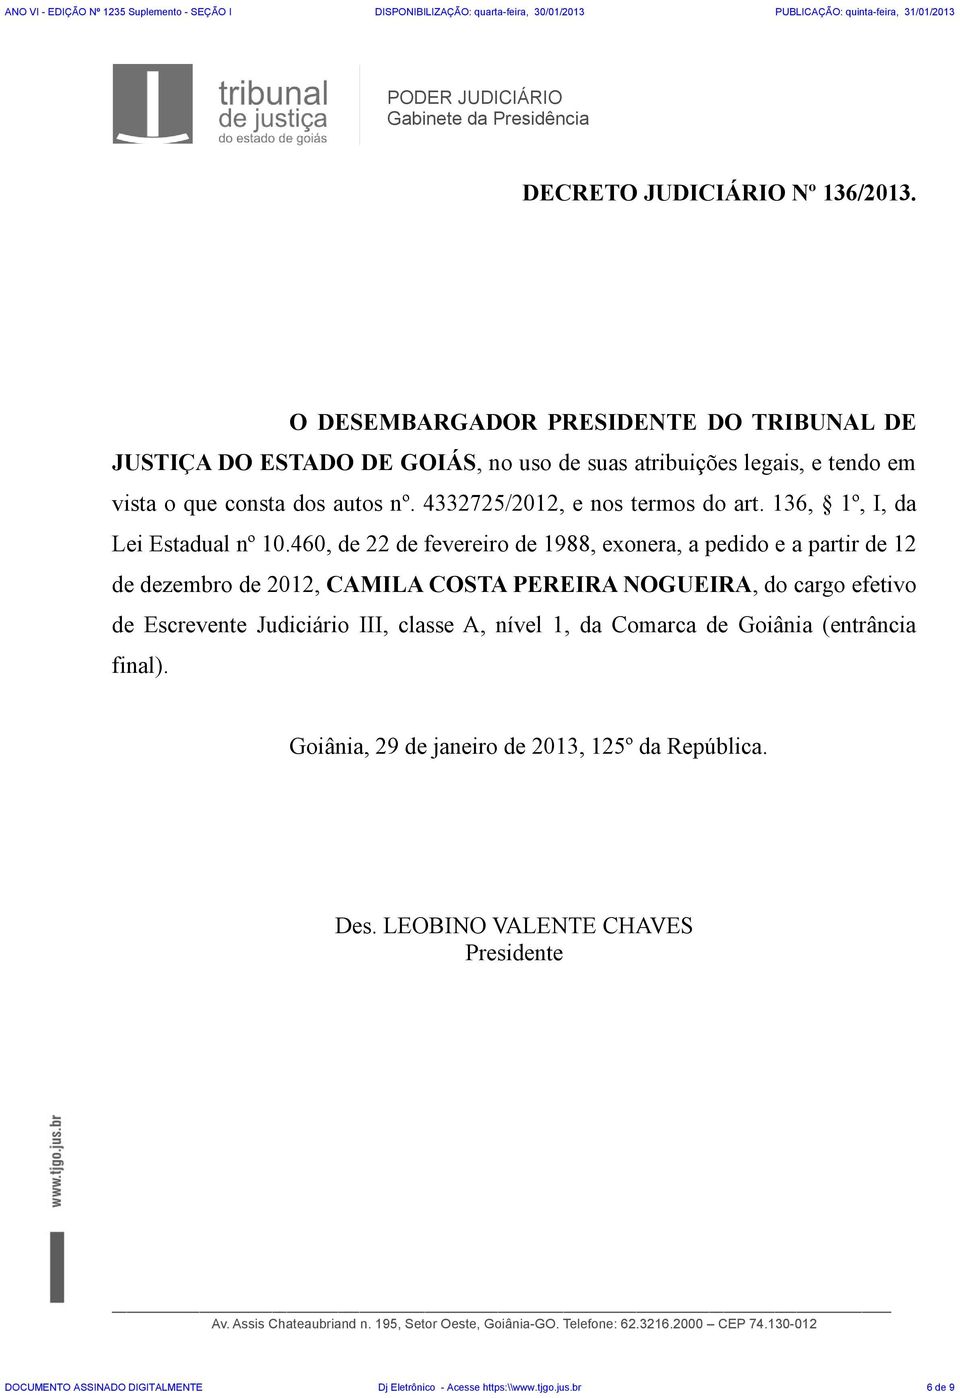 460, de 22 de fevereiro de 1988, exonera, a pedido e a partir de 12 de dezembro de 2012, CAMILA COSTA PEREIRA